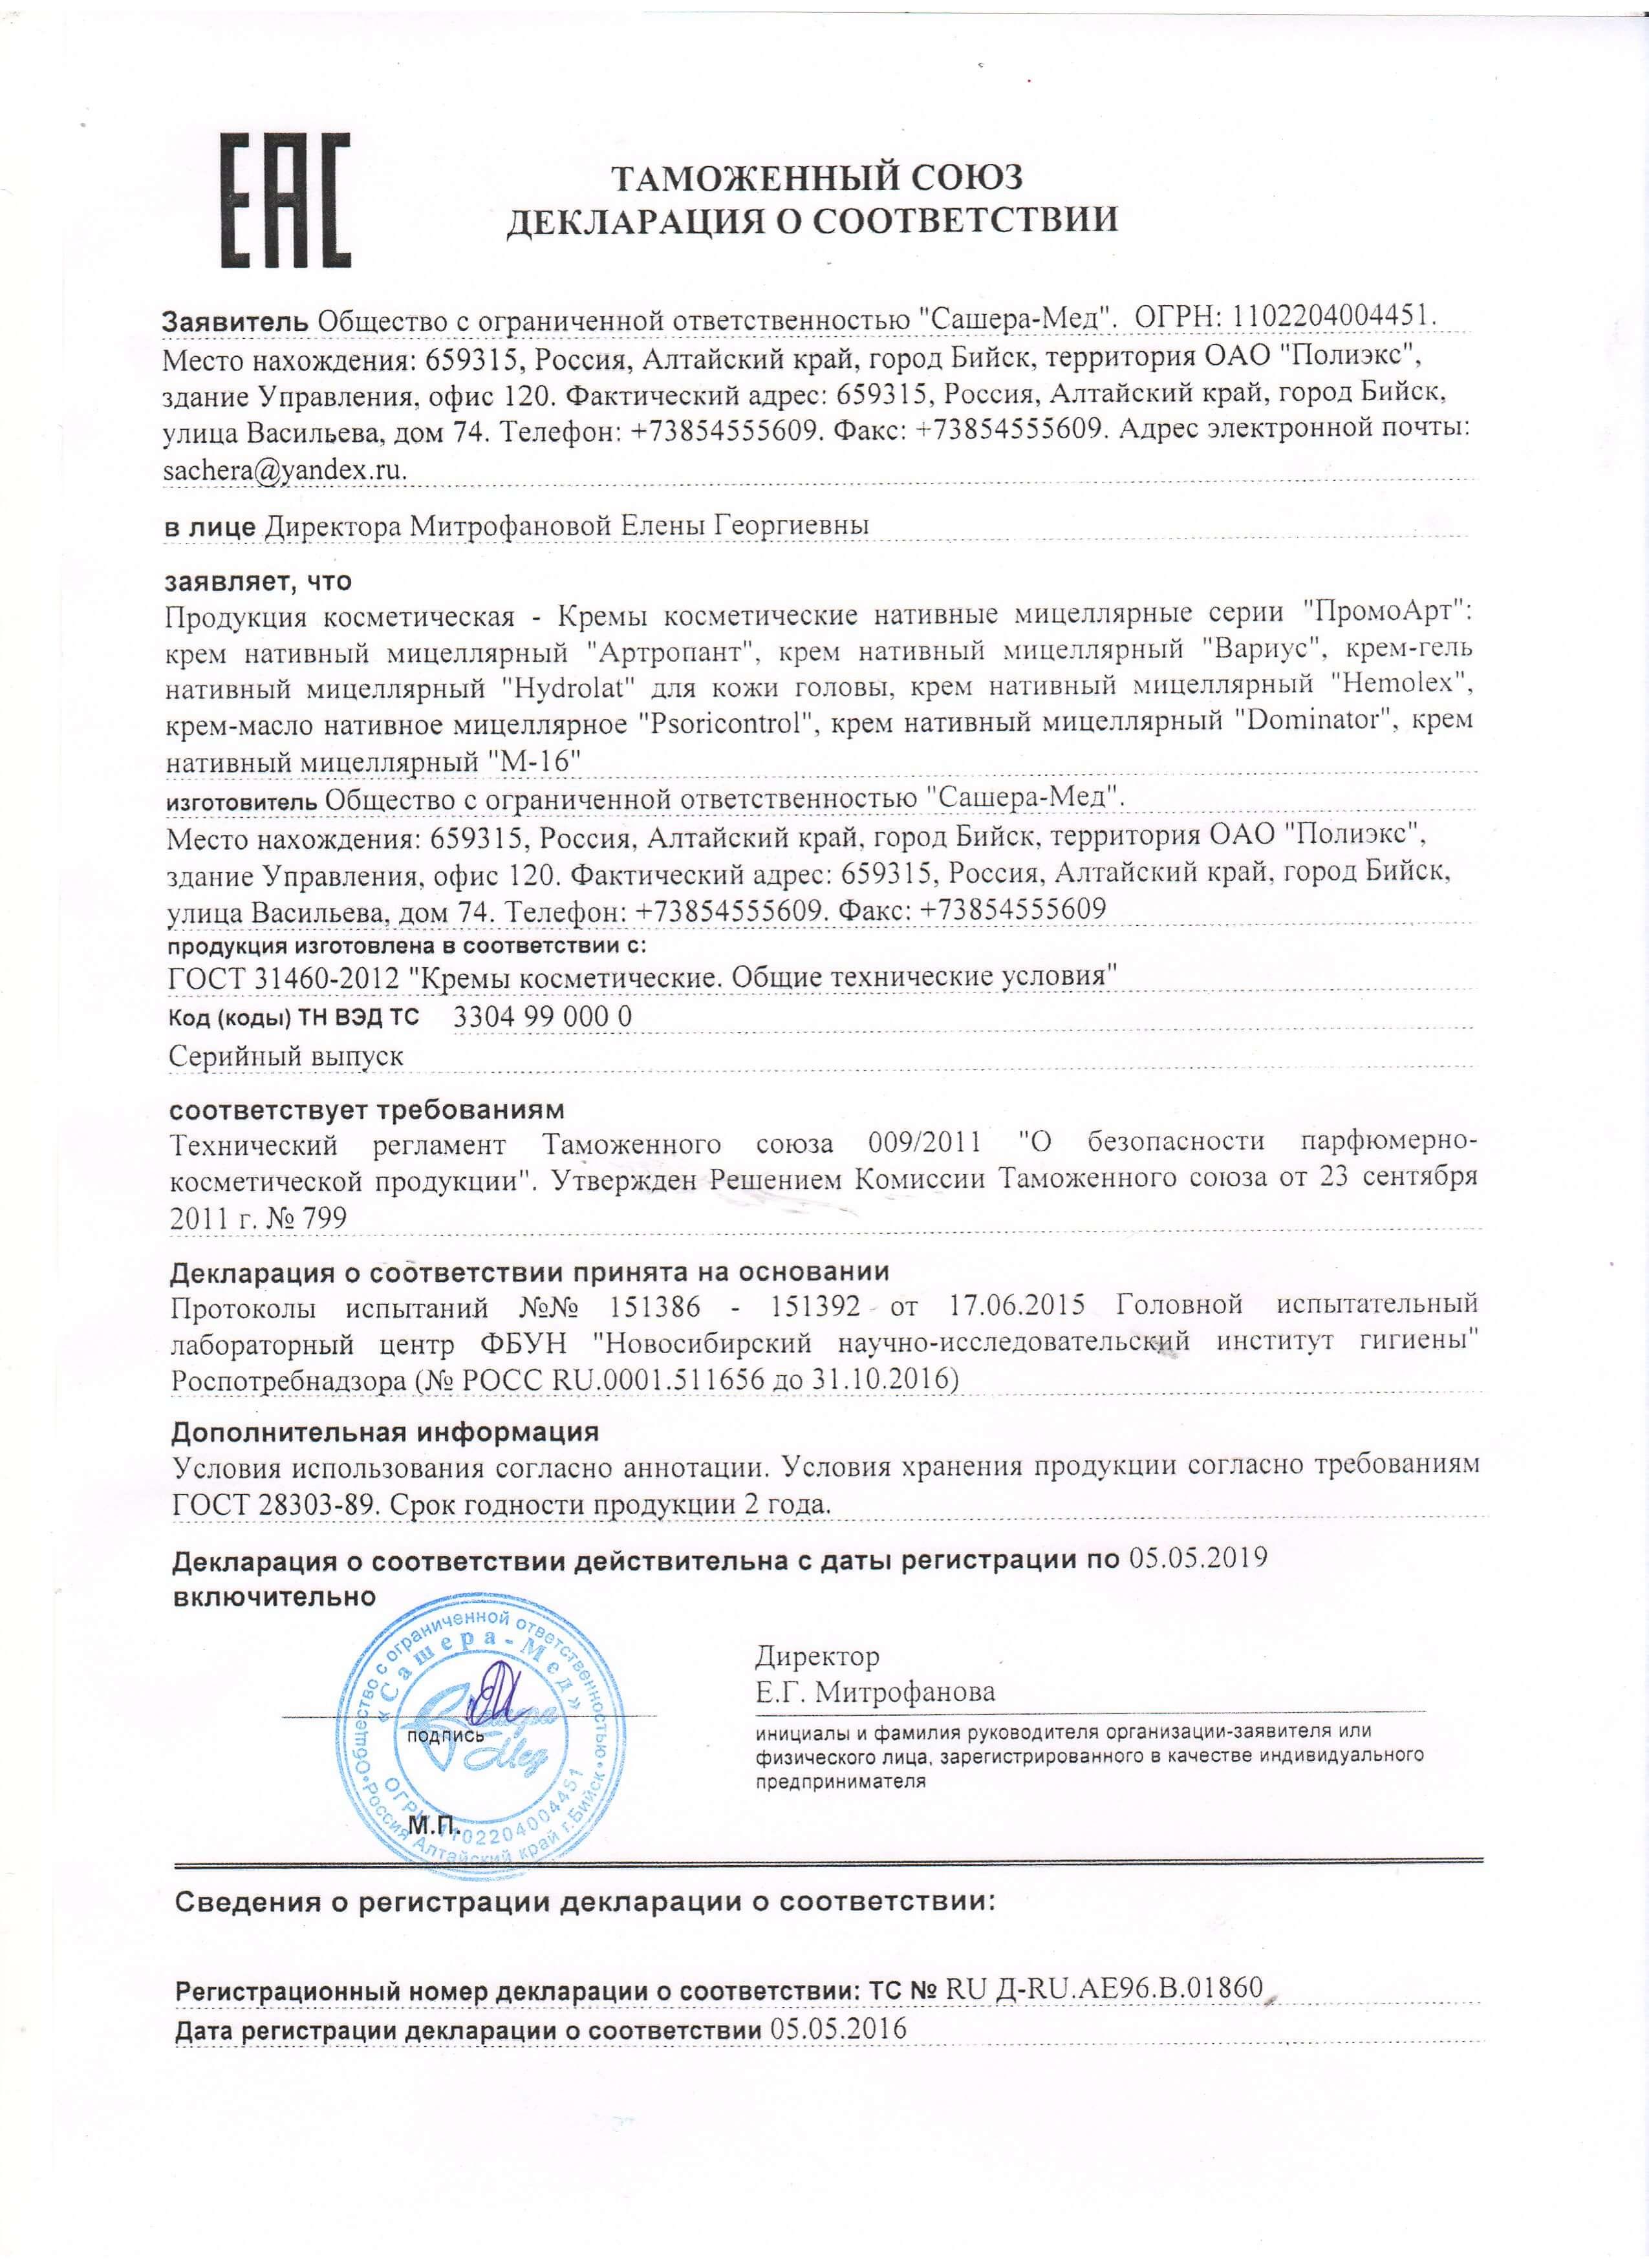 Декларация на артропант в Москве